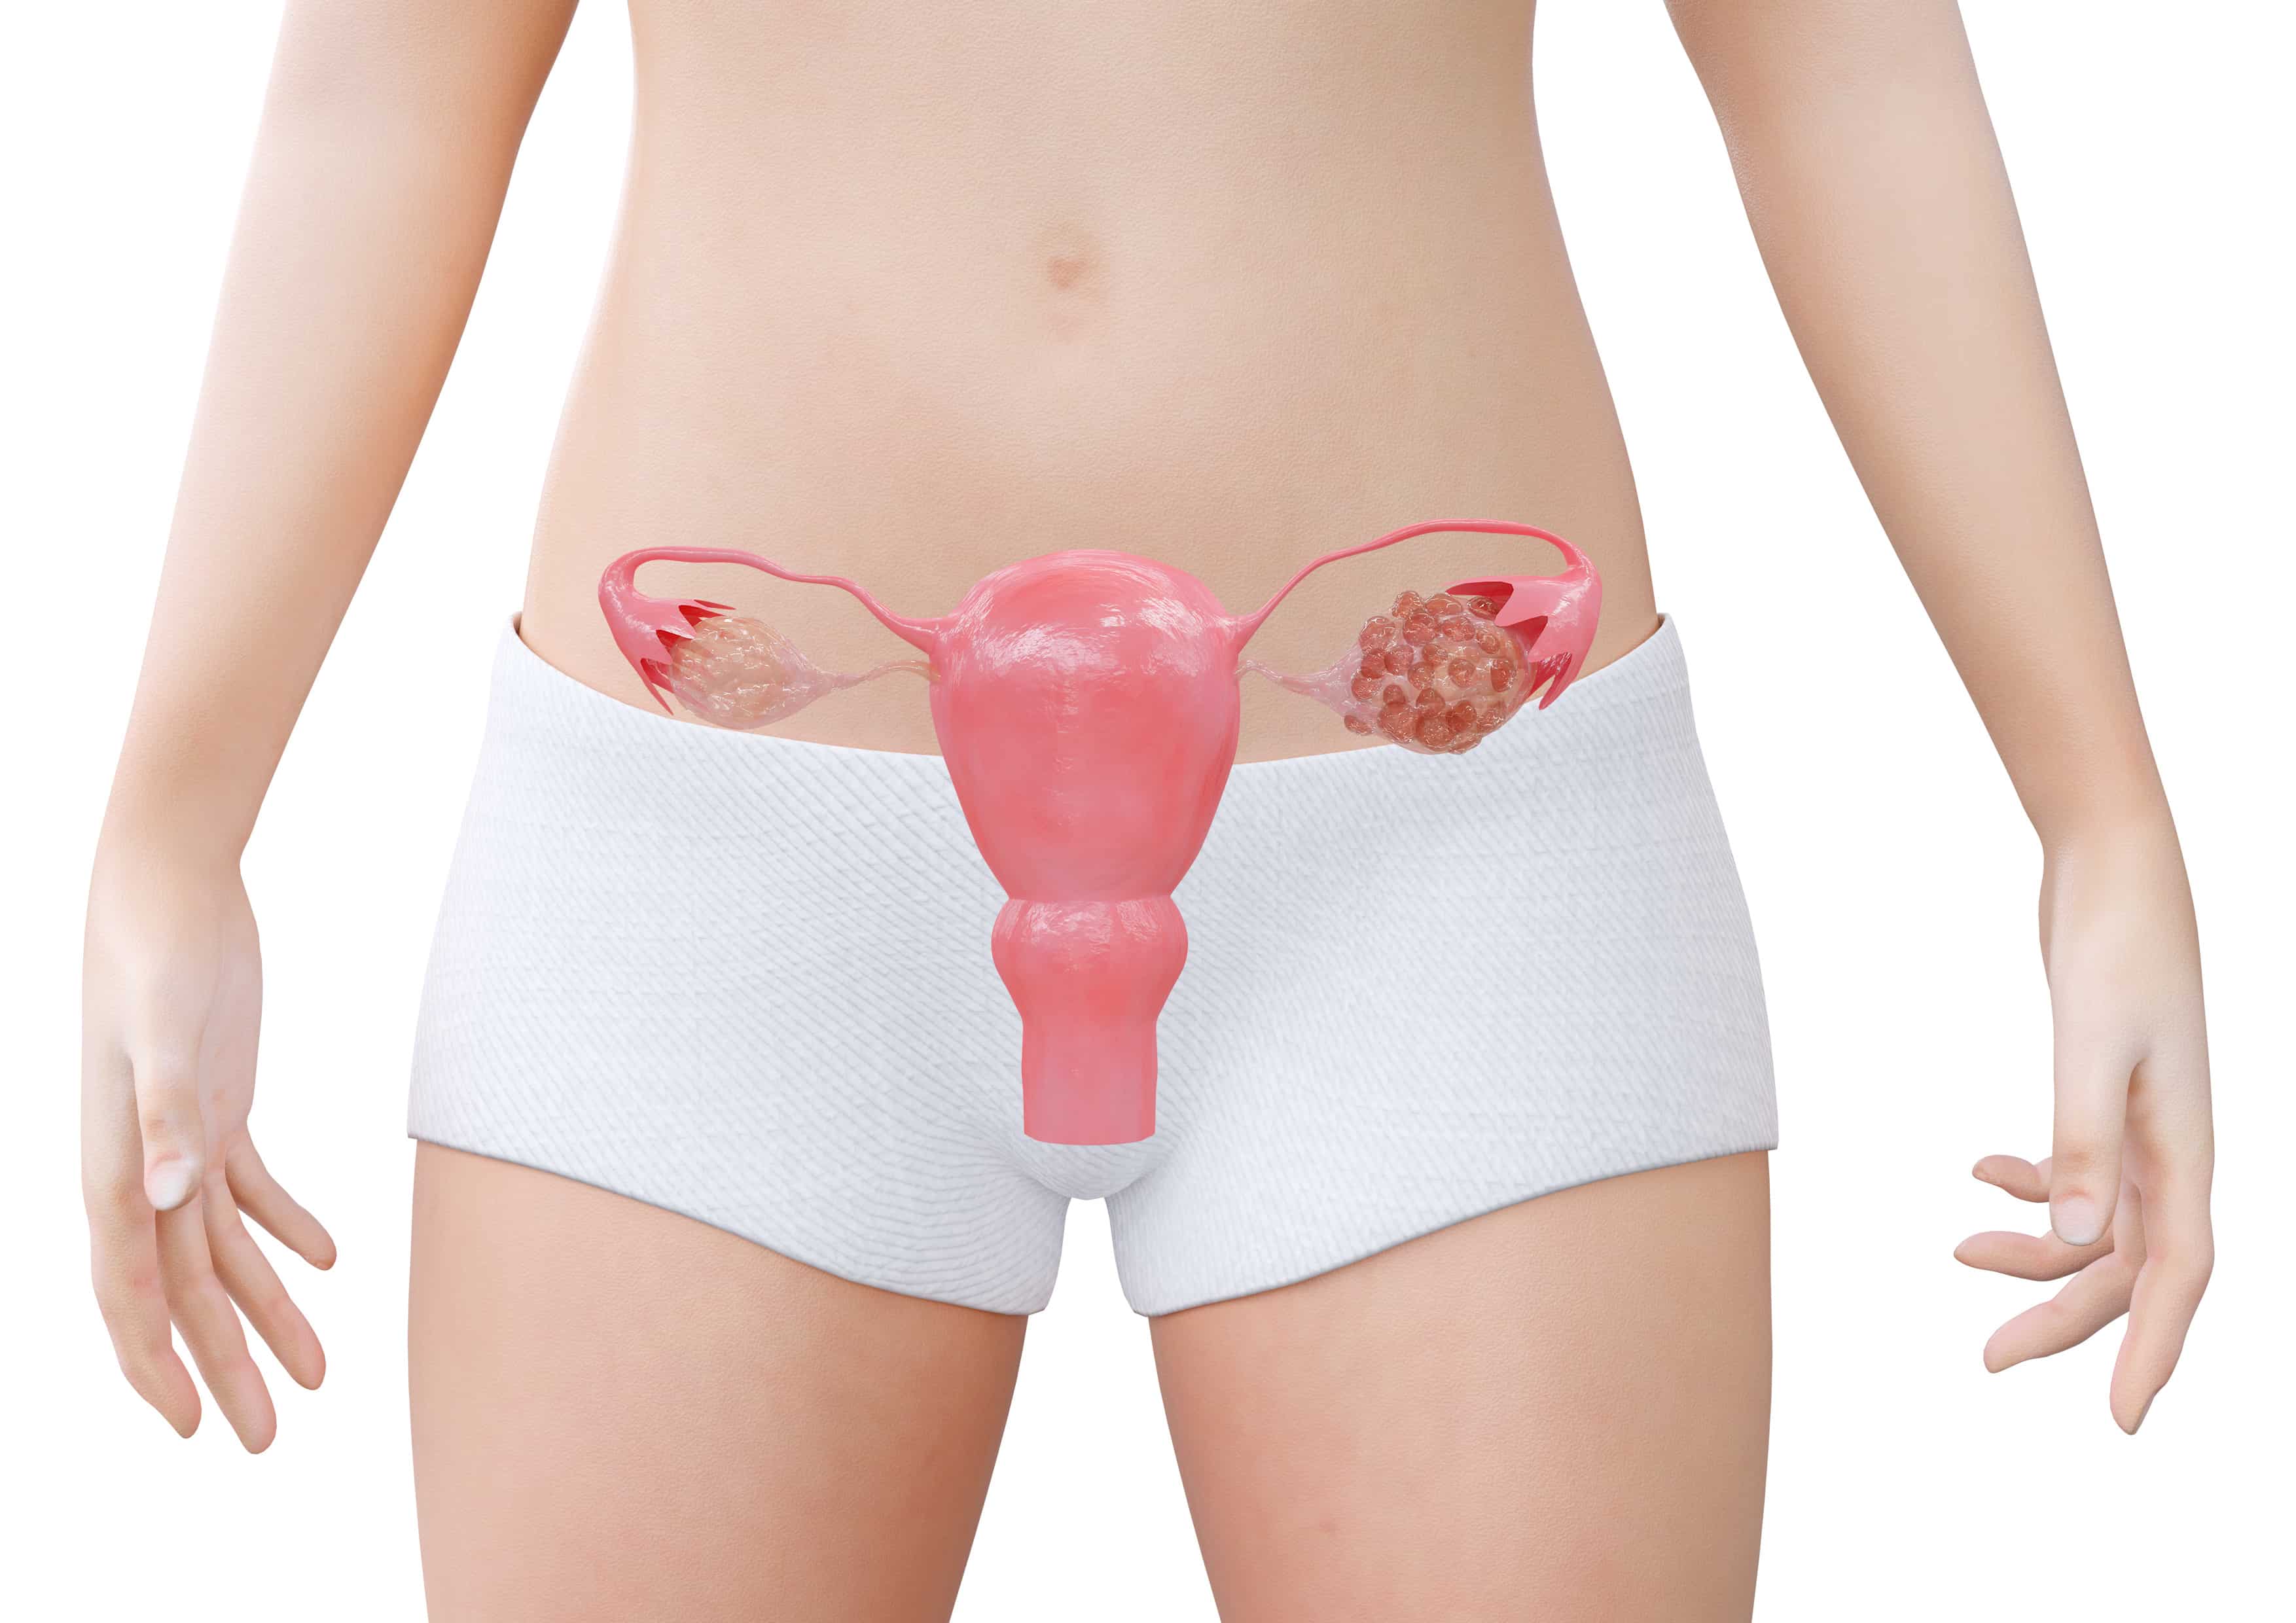 Ciclo ou Periodo menstrual irregular (Menstruação Desregulada)